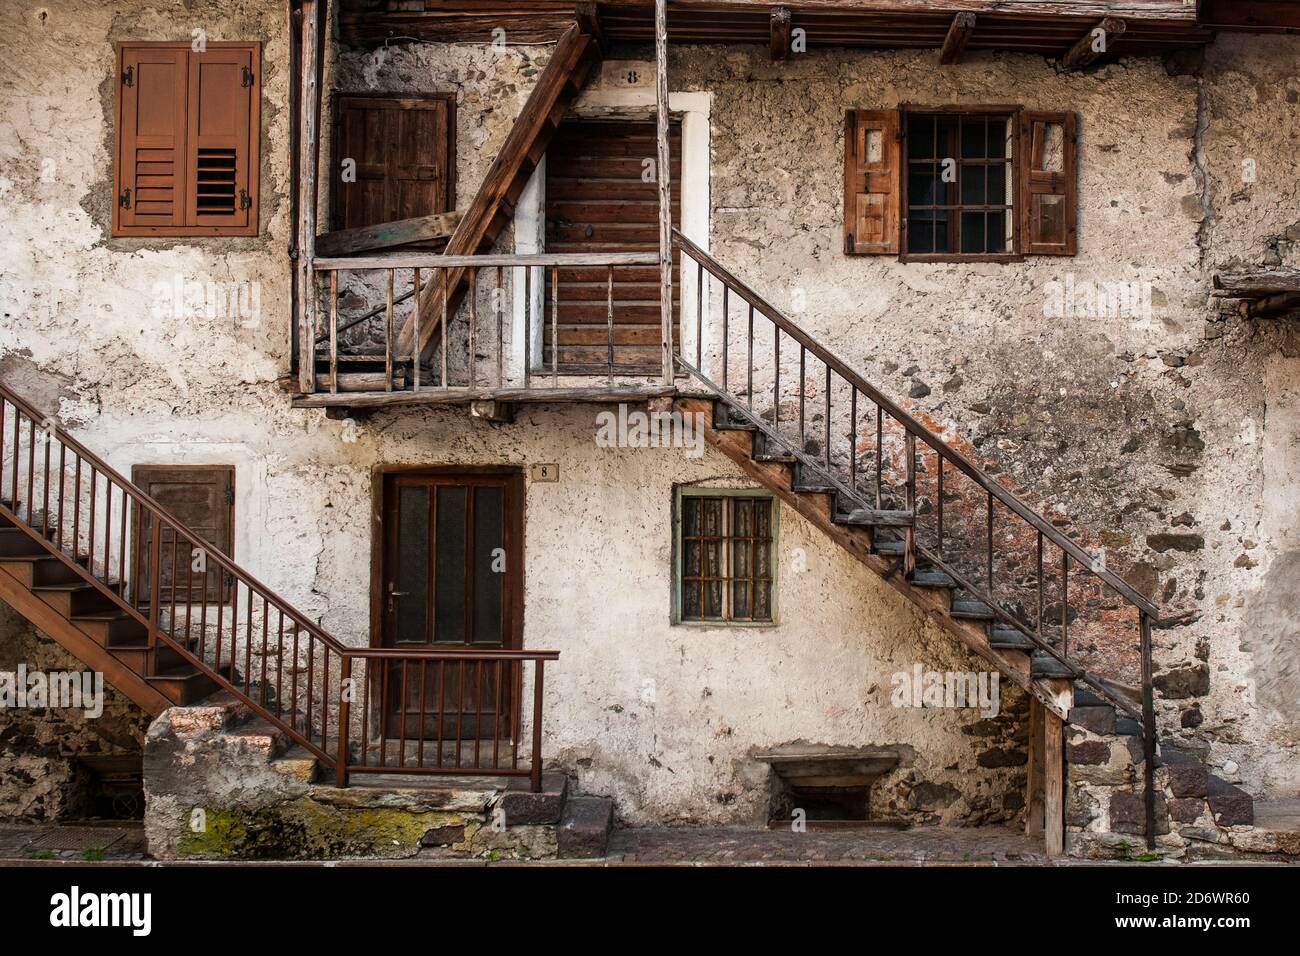 Una vecchia casa nel villaggio italiano di Mezzano, in Trentino Alto Adige con pareti bianche e finestre in legno marrone, porte e ringhiere Foto Stock